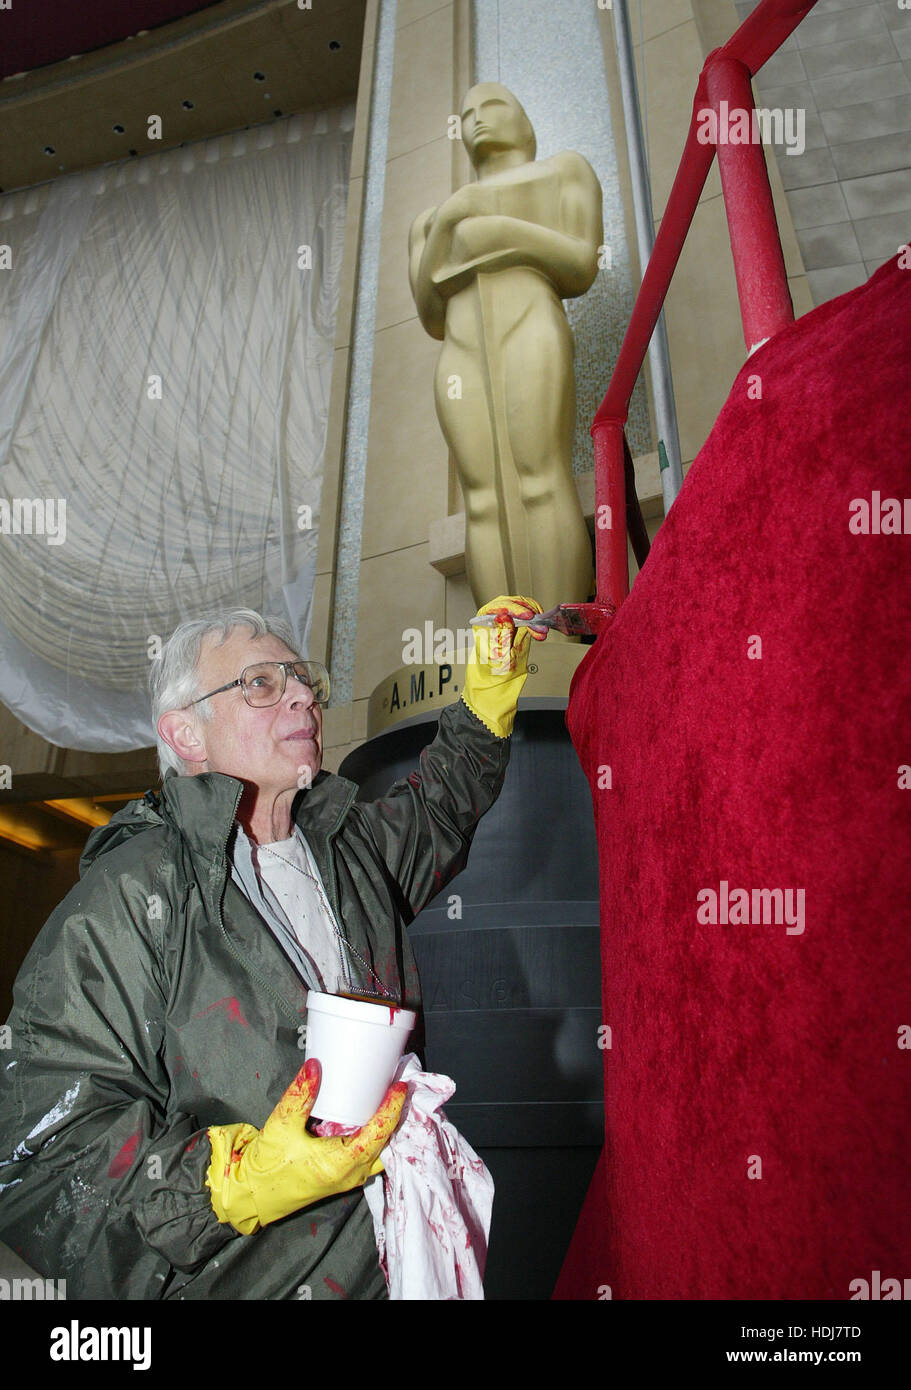 Dennis Mancini Farben steht das Geländer des Zuschauers am Mittwoch 25 Feburar 2004 vor eine Oscar-Statuette am Eingang zum Kodak Theatre in Vorbereitung auf Sonntag 76th Annual Academy Awards show in Los Angeles, Kalifornien. Foto von Francis Specker Stockfoto